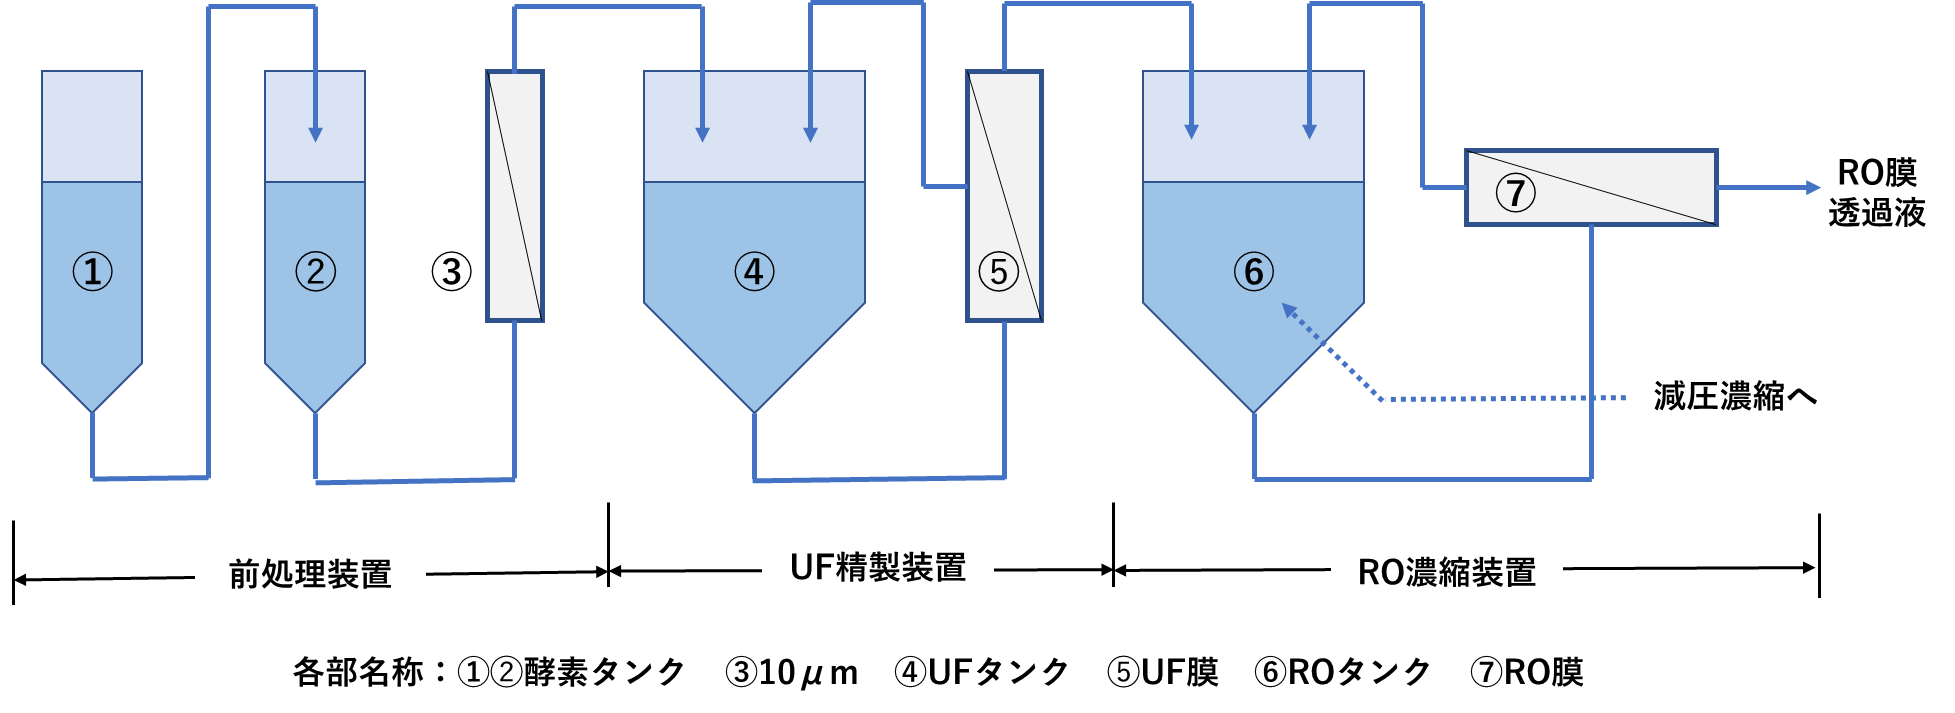 図2. 水産加工排水より調味料(アミノ酸調味料)を製造する膜リアクタシステム概略図